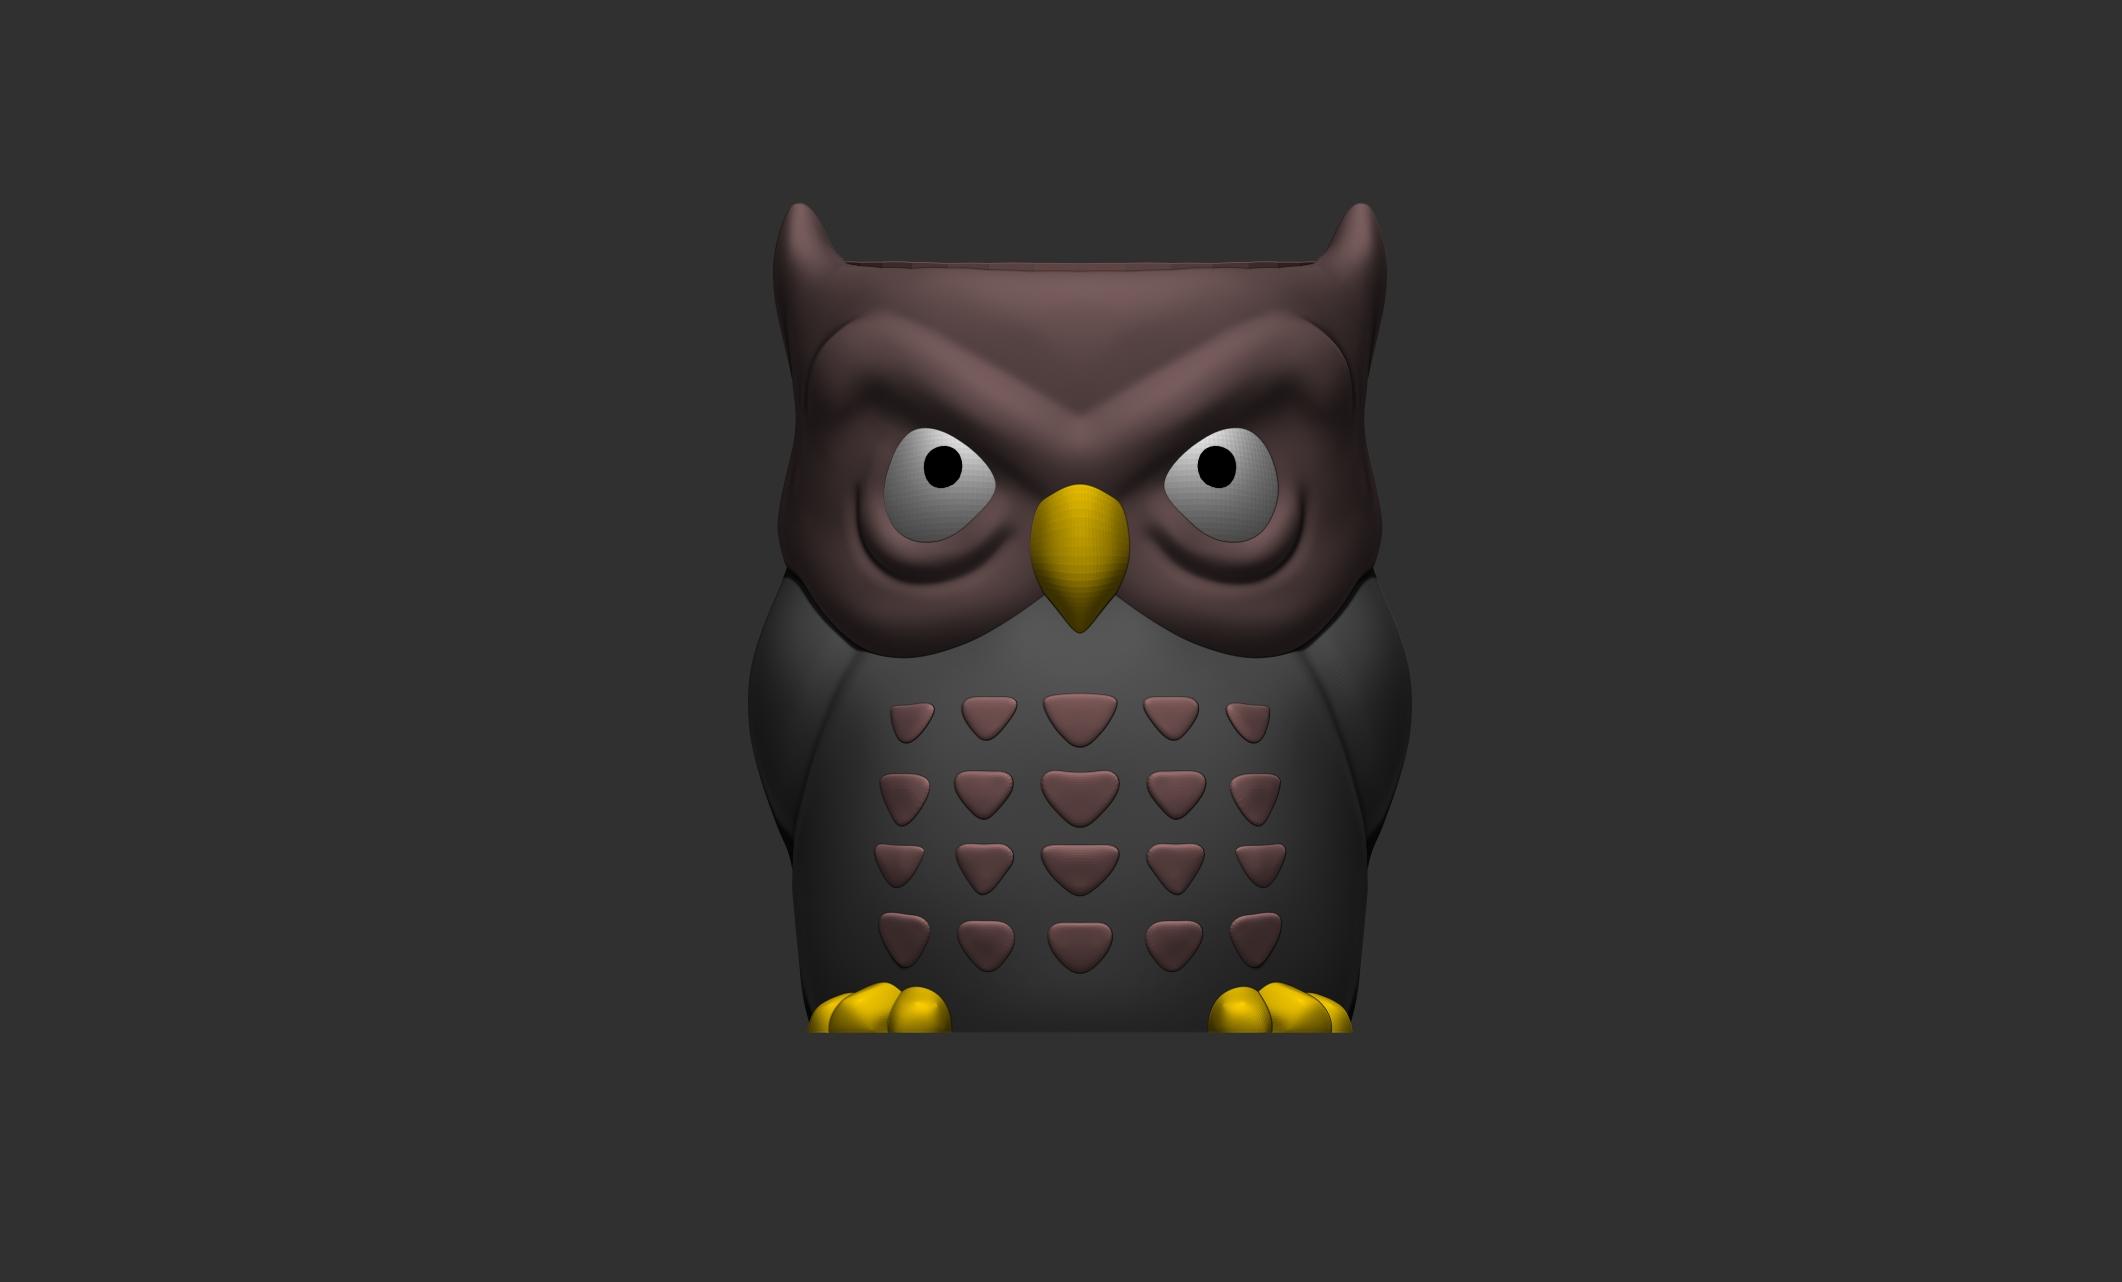 Grumpy Owl Planter and Owl Pencil Pot 3d model